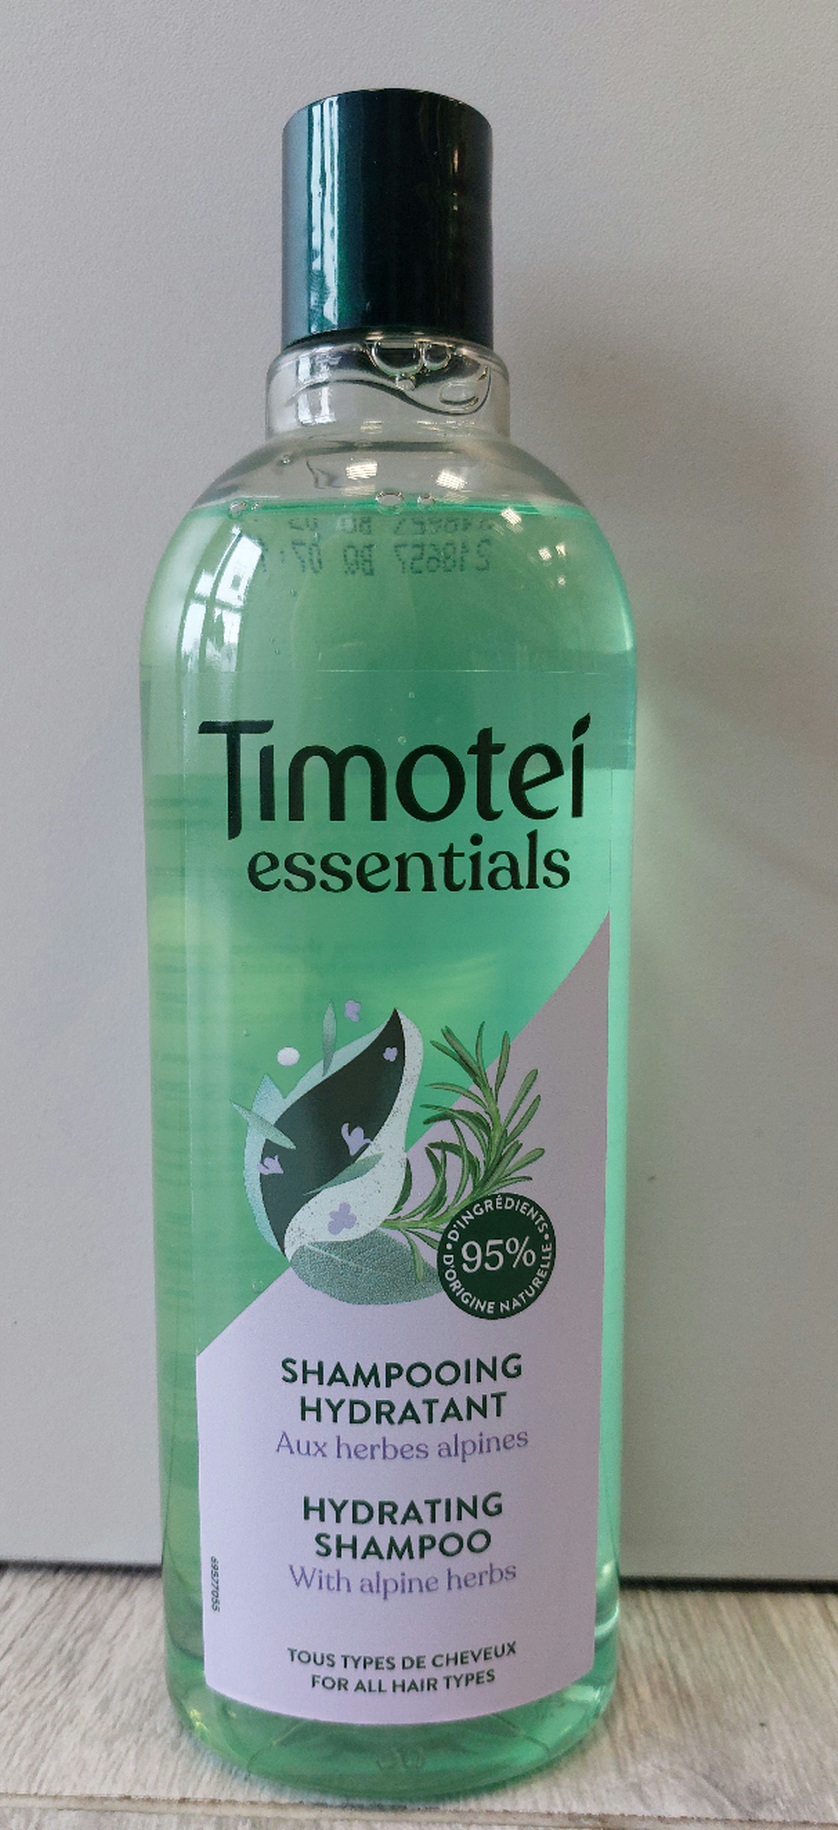 czy szampon timotei jest testowany na zwierzętach